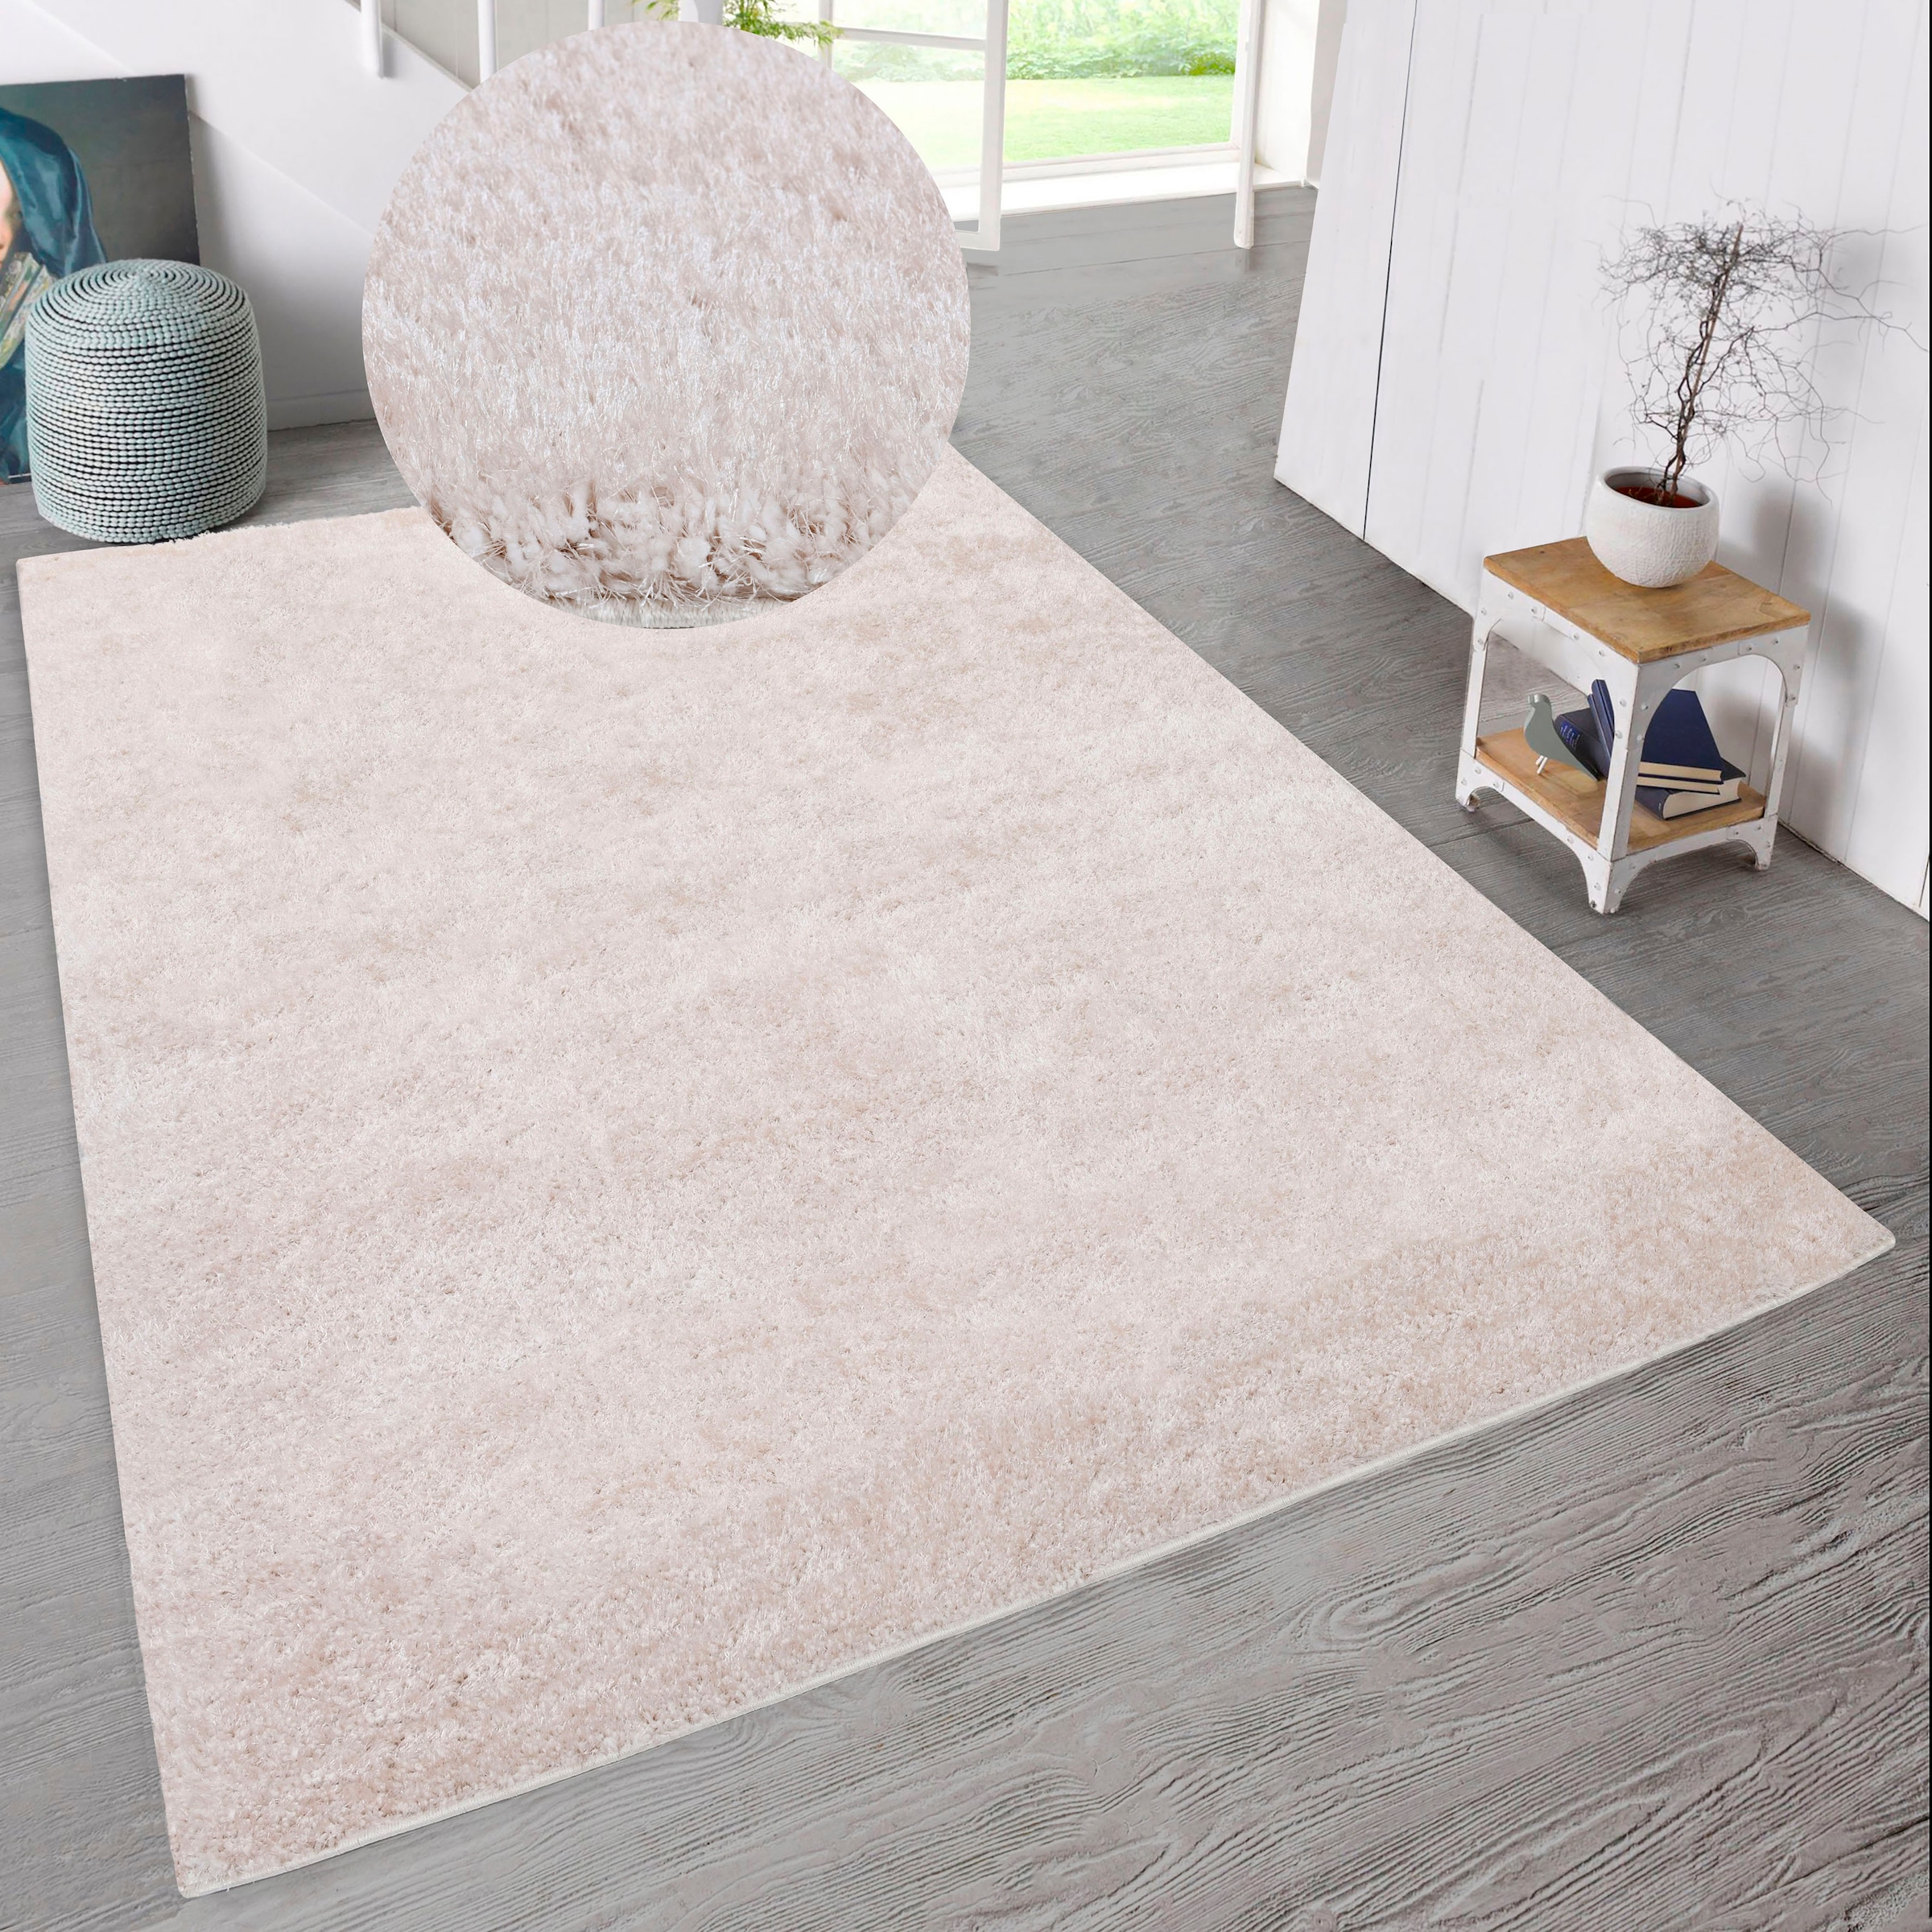 Home affaire Hochflor-Teppich »Malin«, weich in leicht glänzend, rechteckig, Uni-Farben, einfarbig, Shaggy besonders